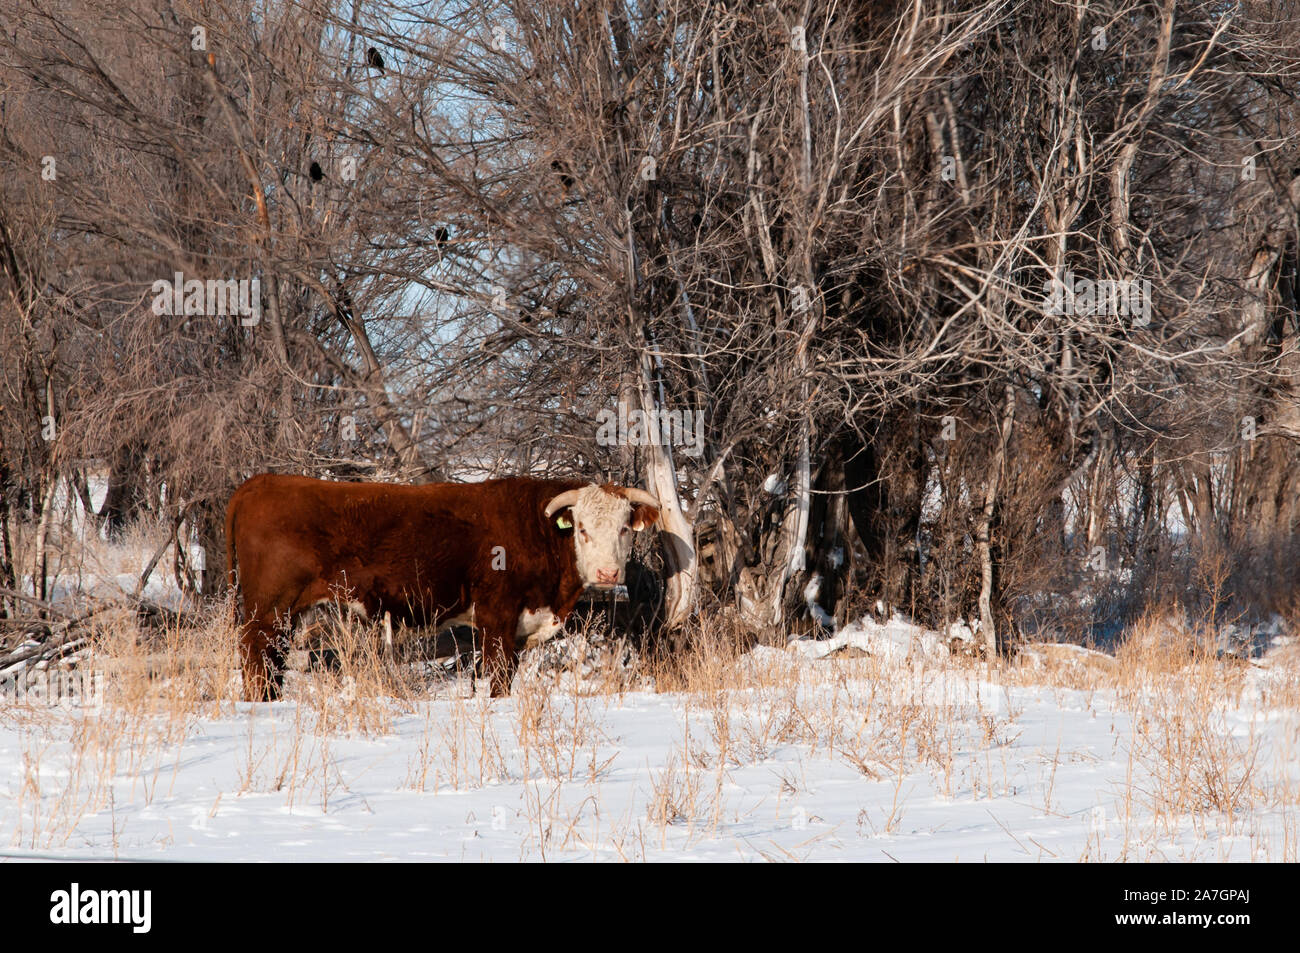 Tori in inverno pascolo a separarli dalle mucche. Foto Stock